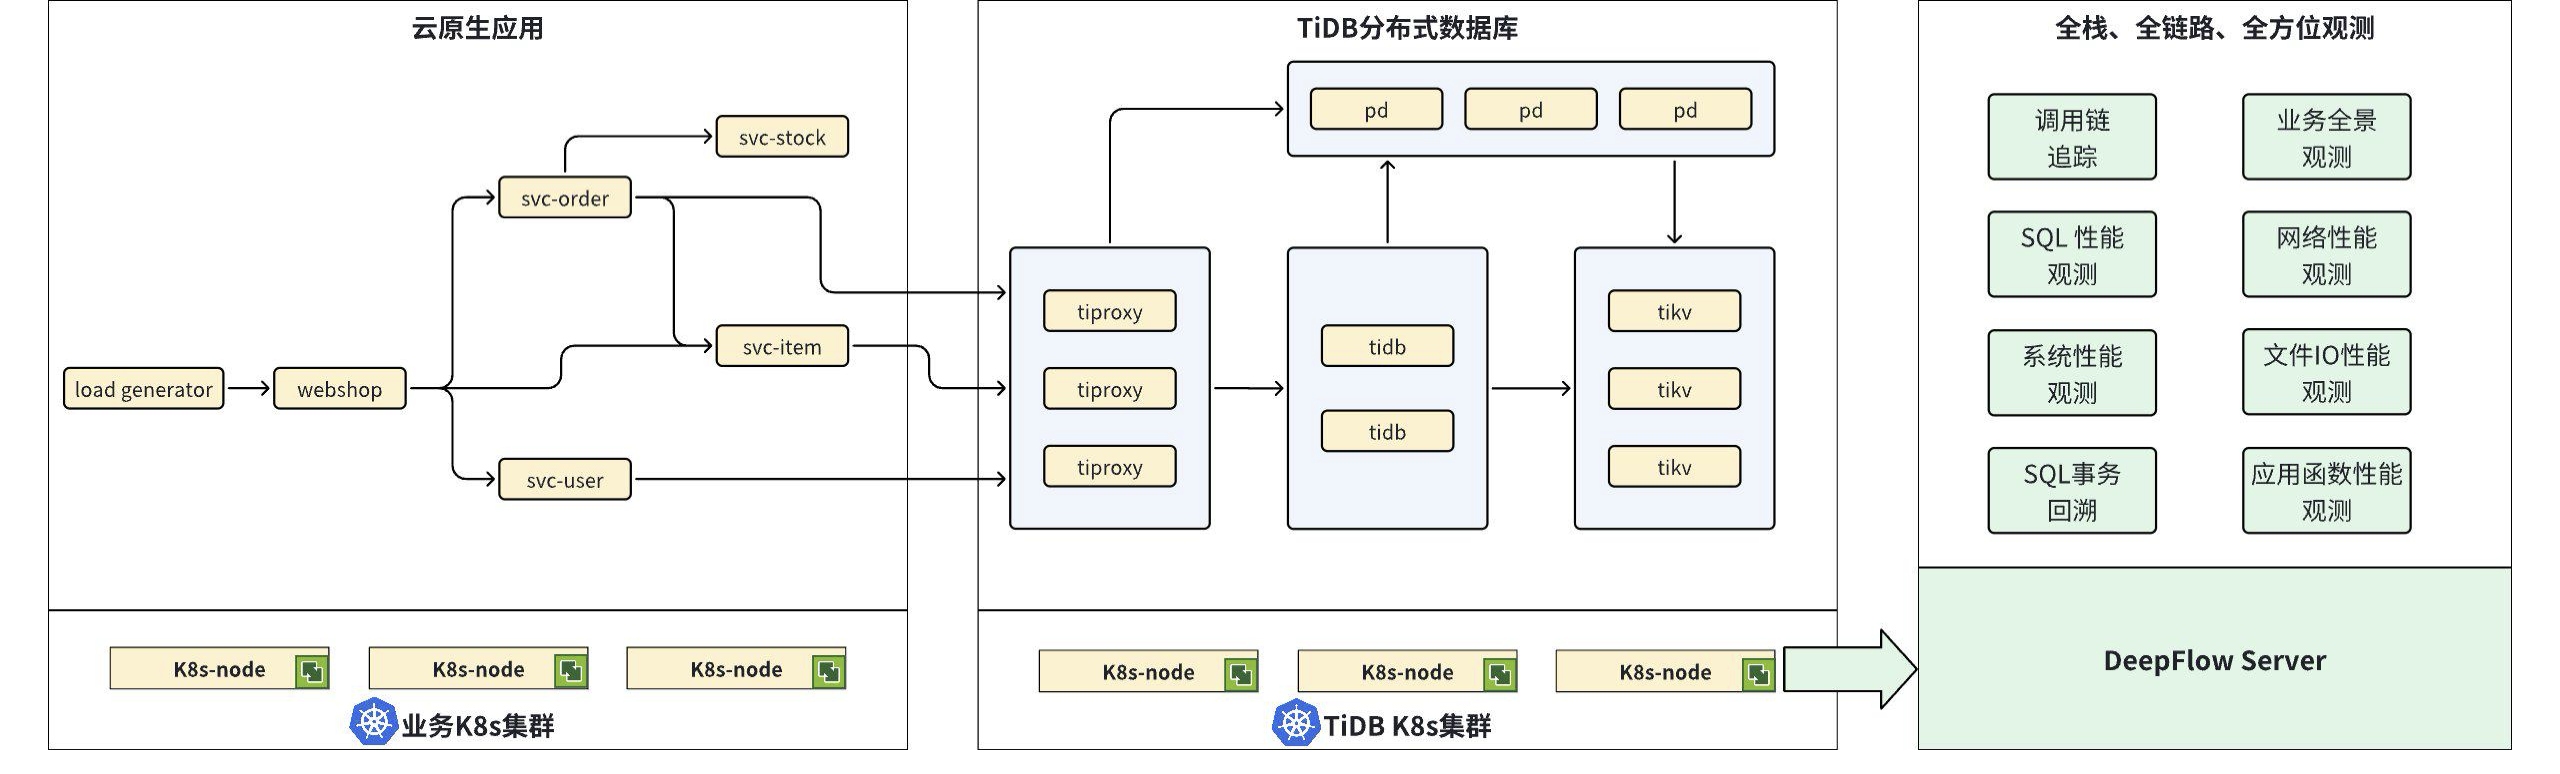 图 1 - TiDB 可观测性整体部署架构